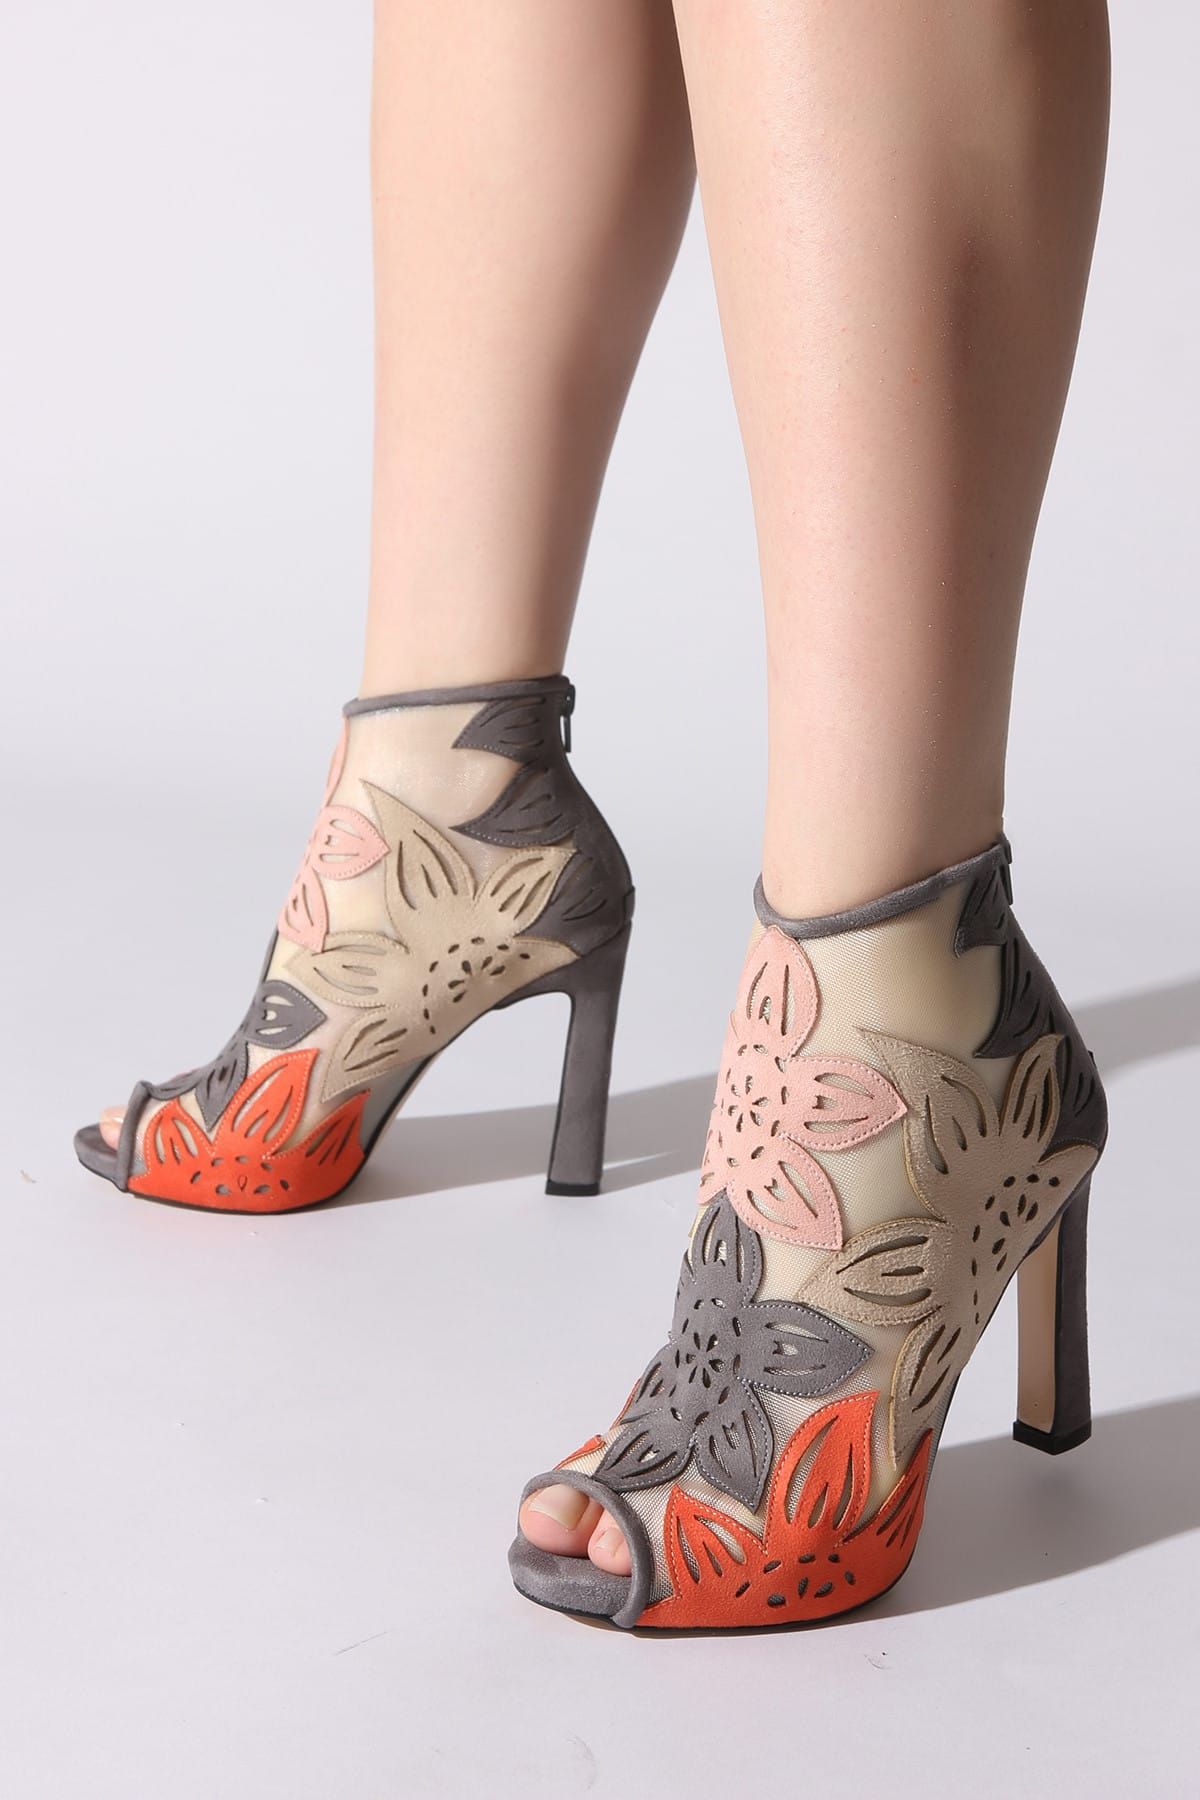 Rovigo Gri Kadın Klasik Topuklu Ayakkabı 11110388958-01